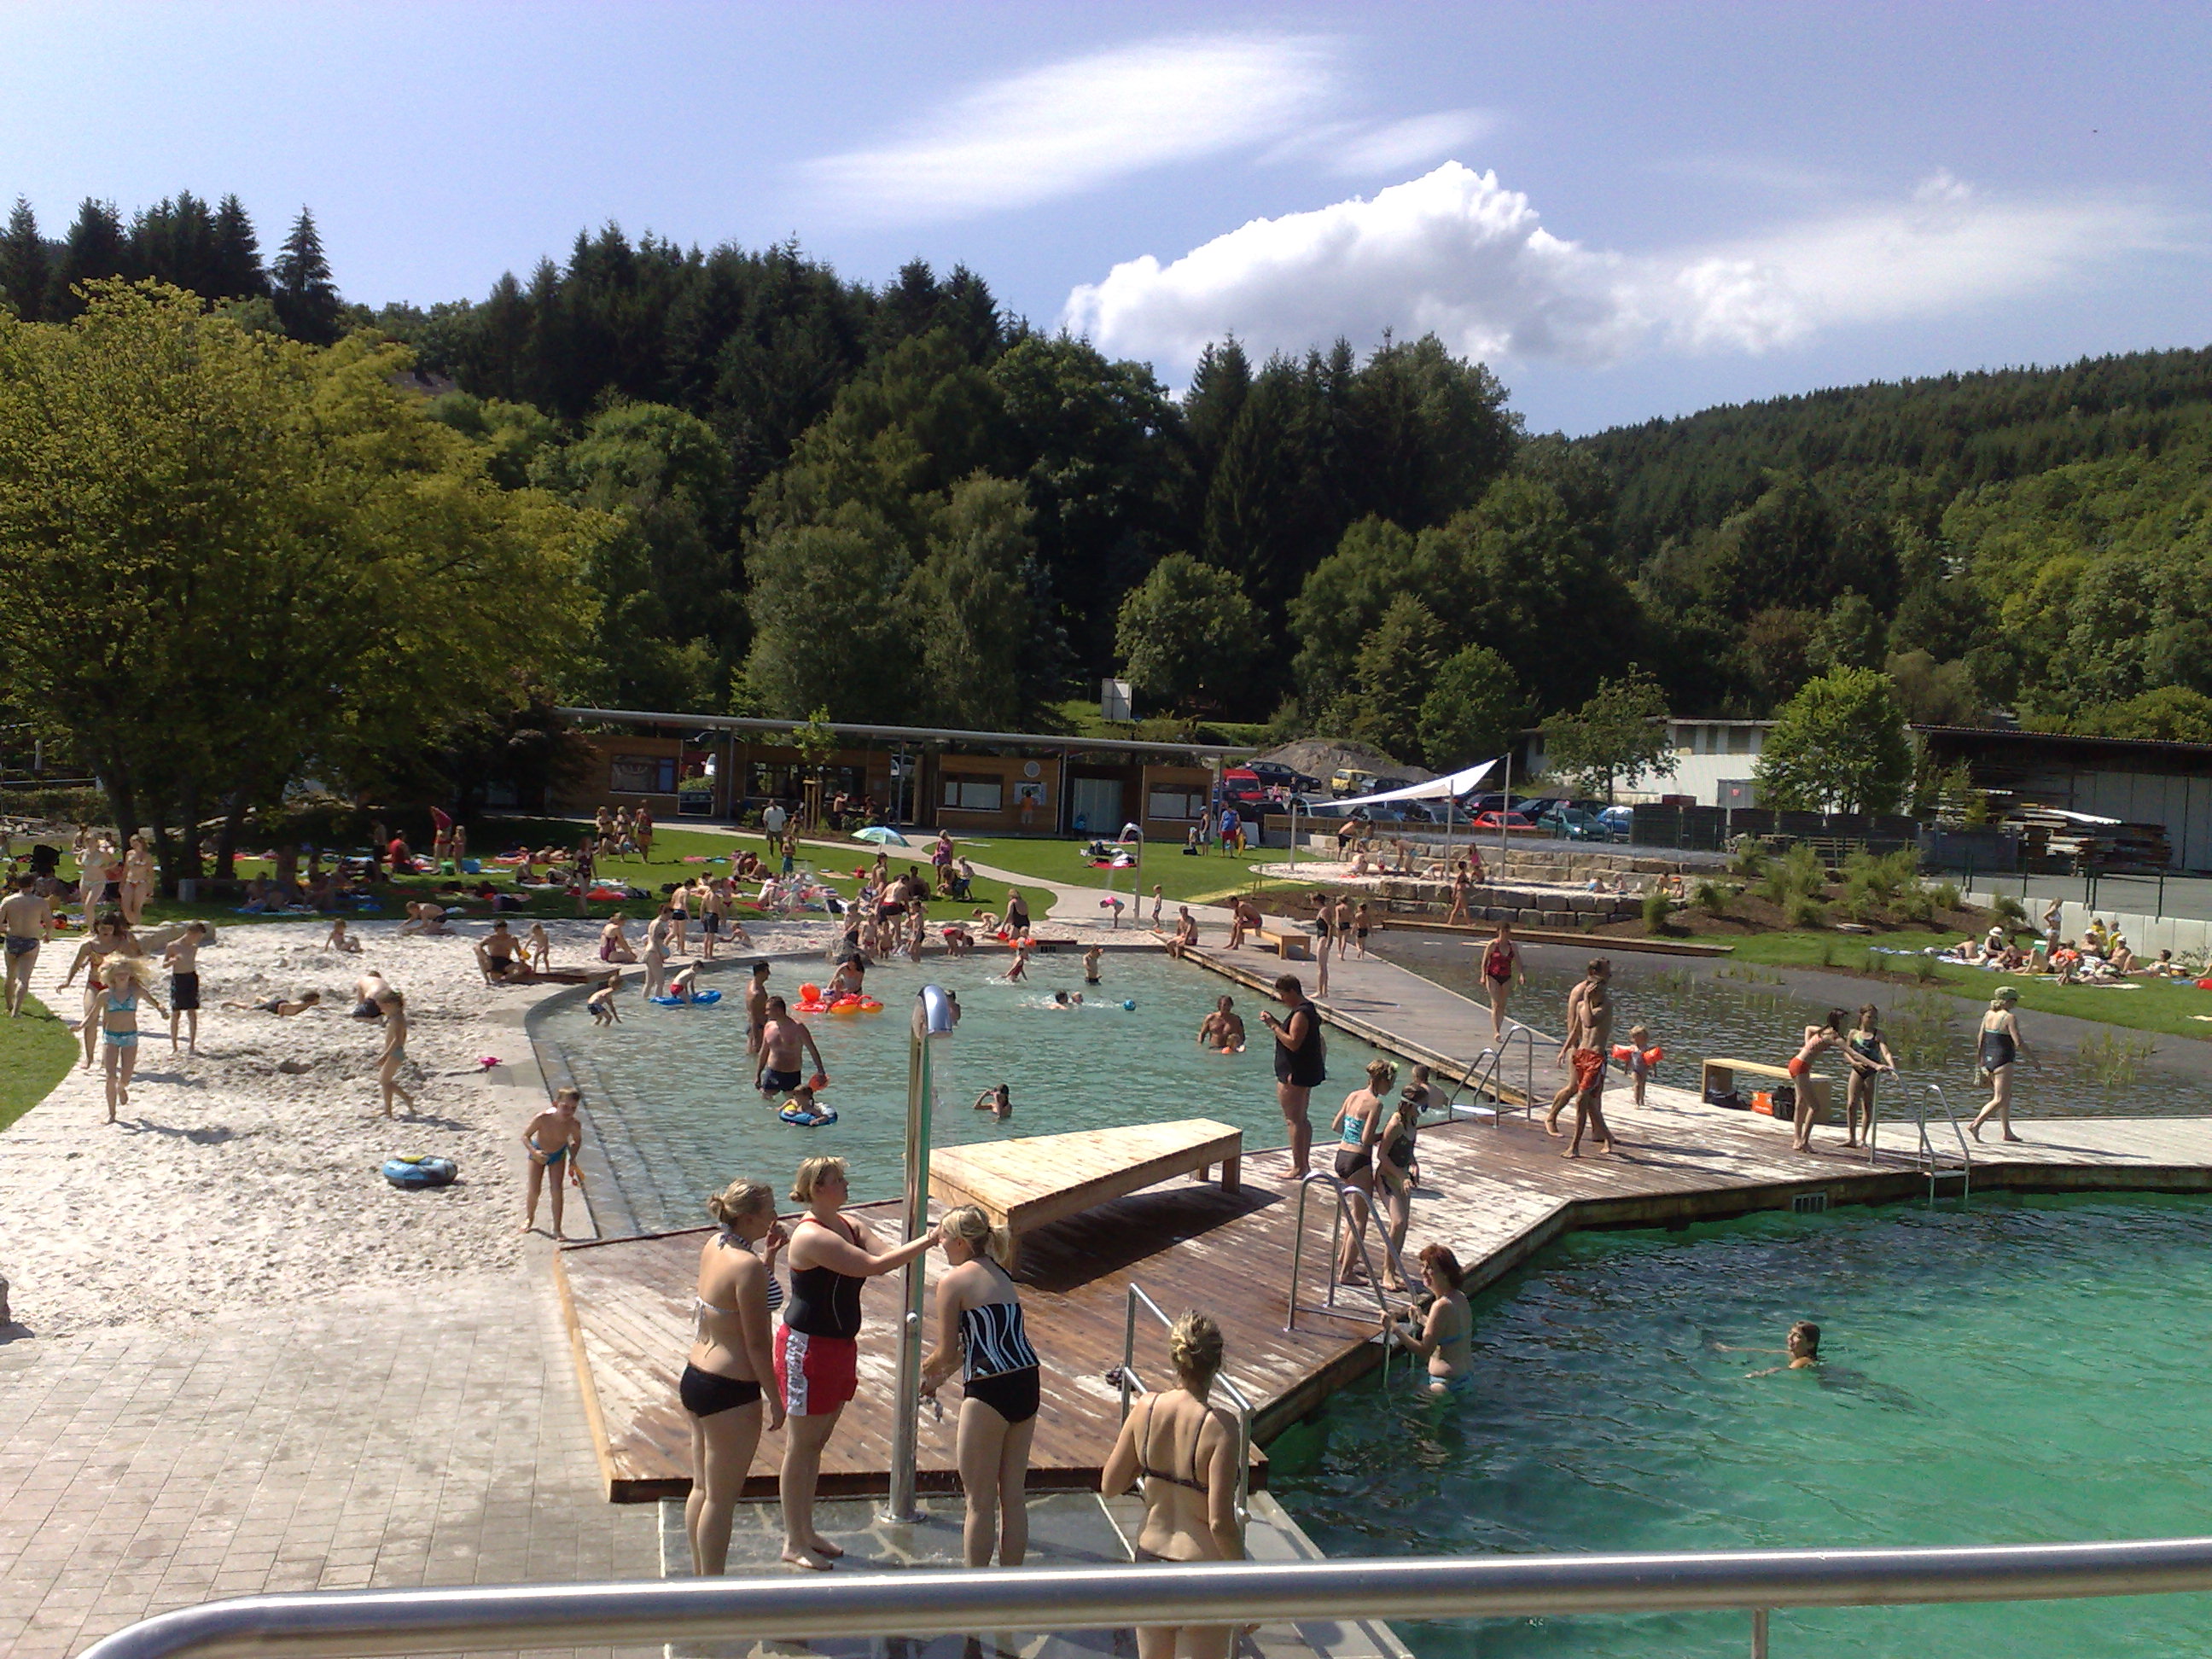 Naturbad in Hallenberg.
